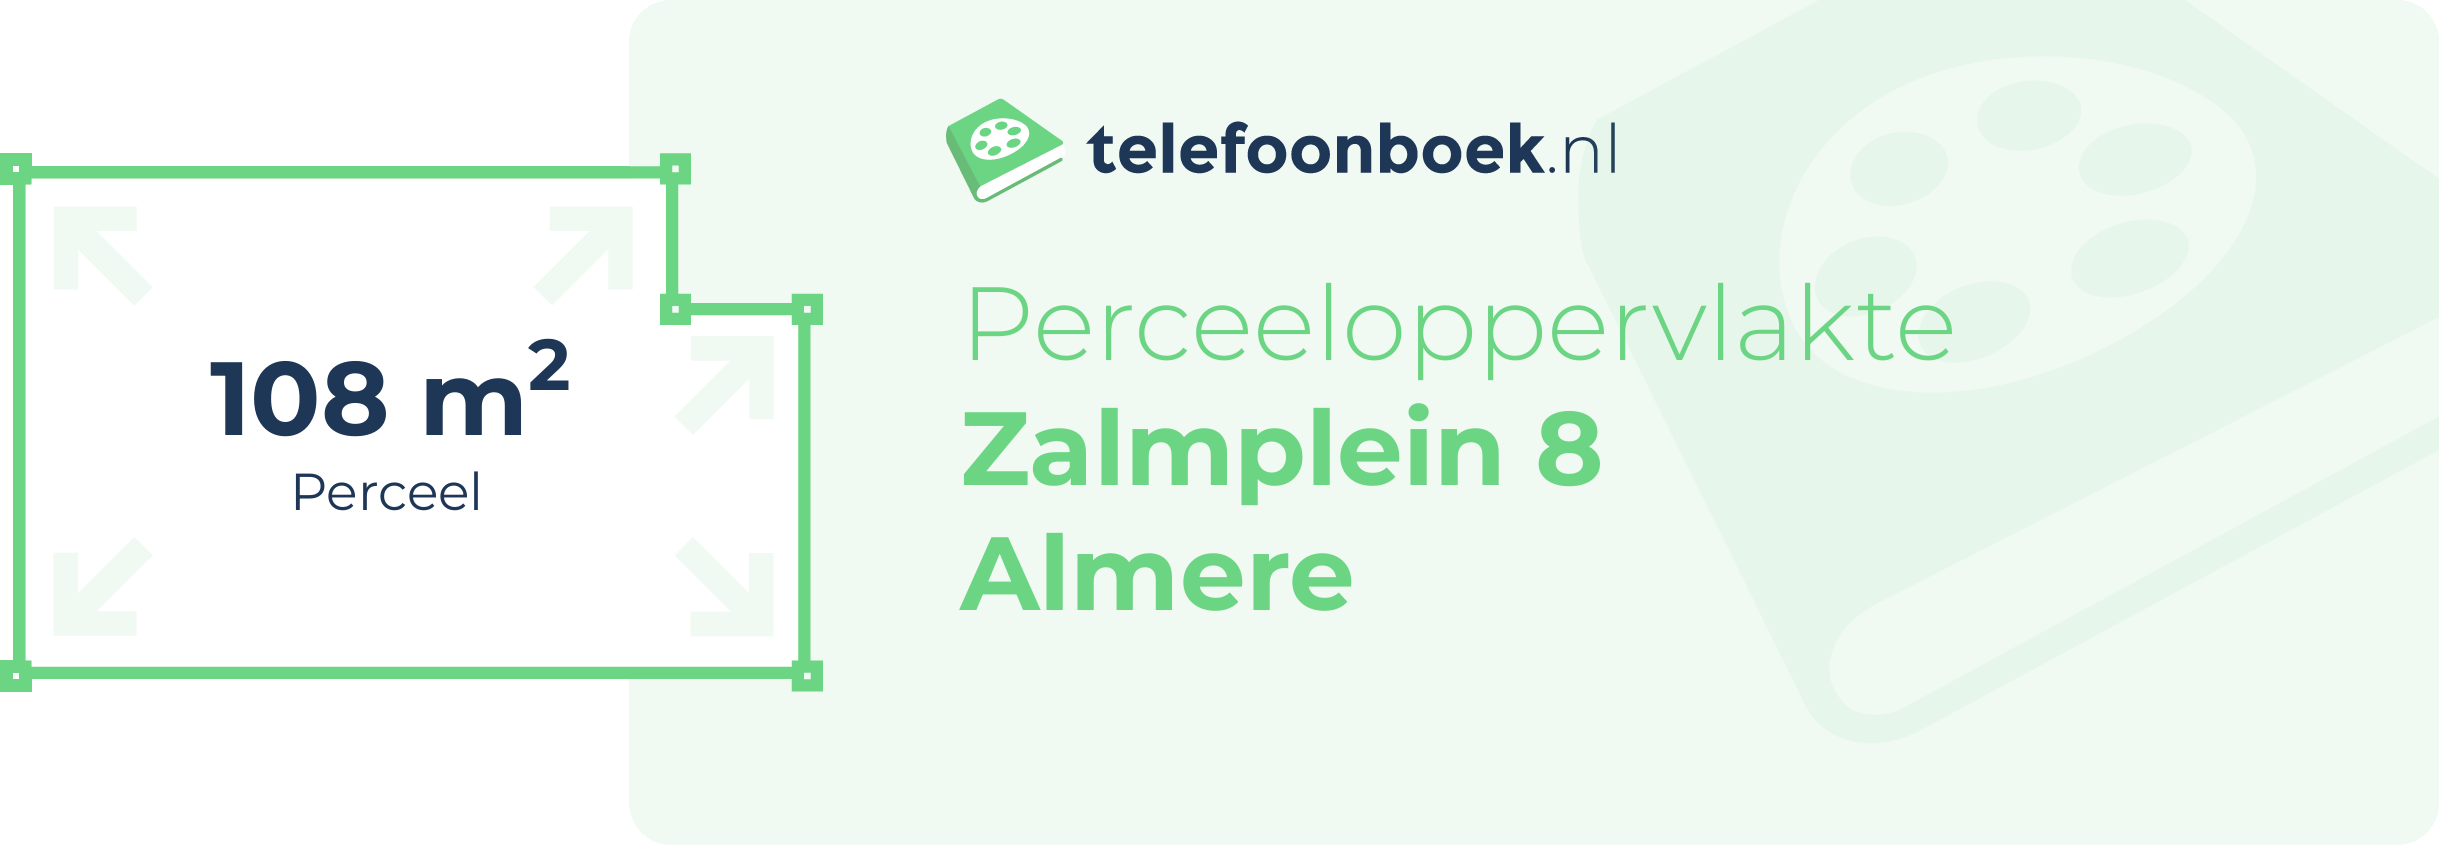 Perceeloppervlakte Zalmplein 8 Almere